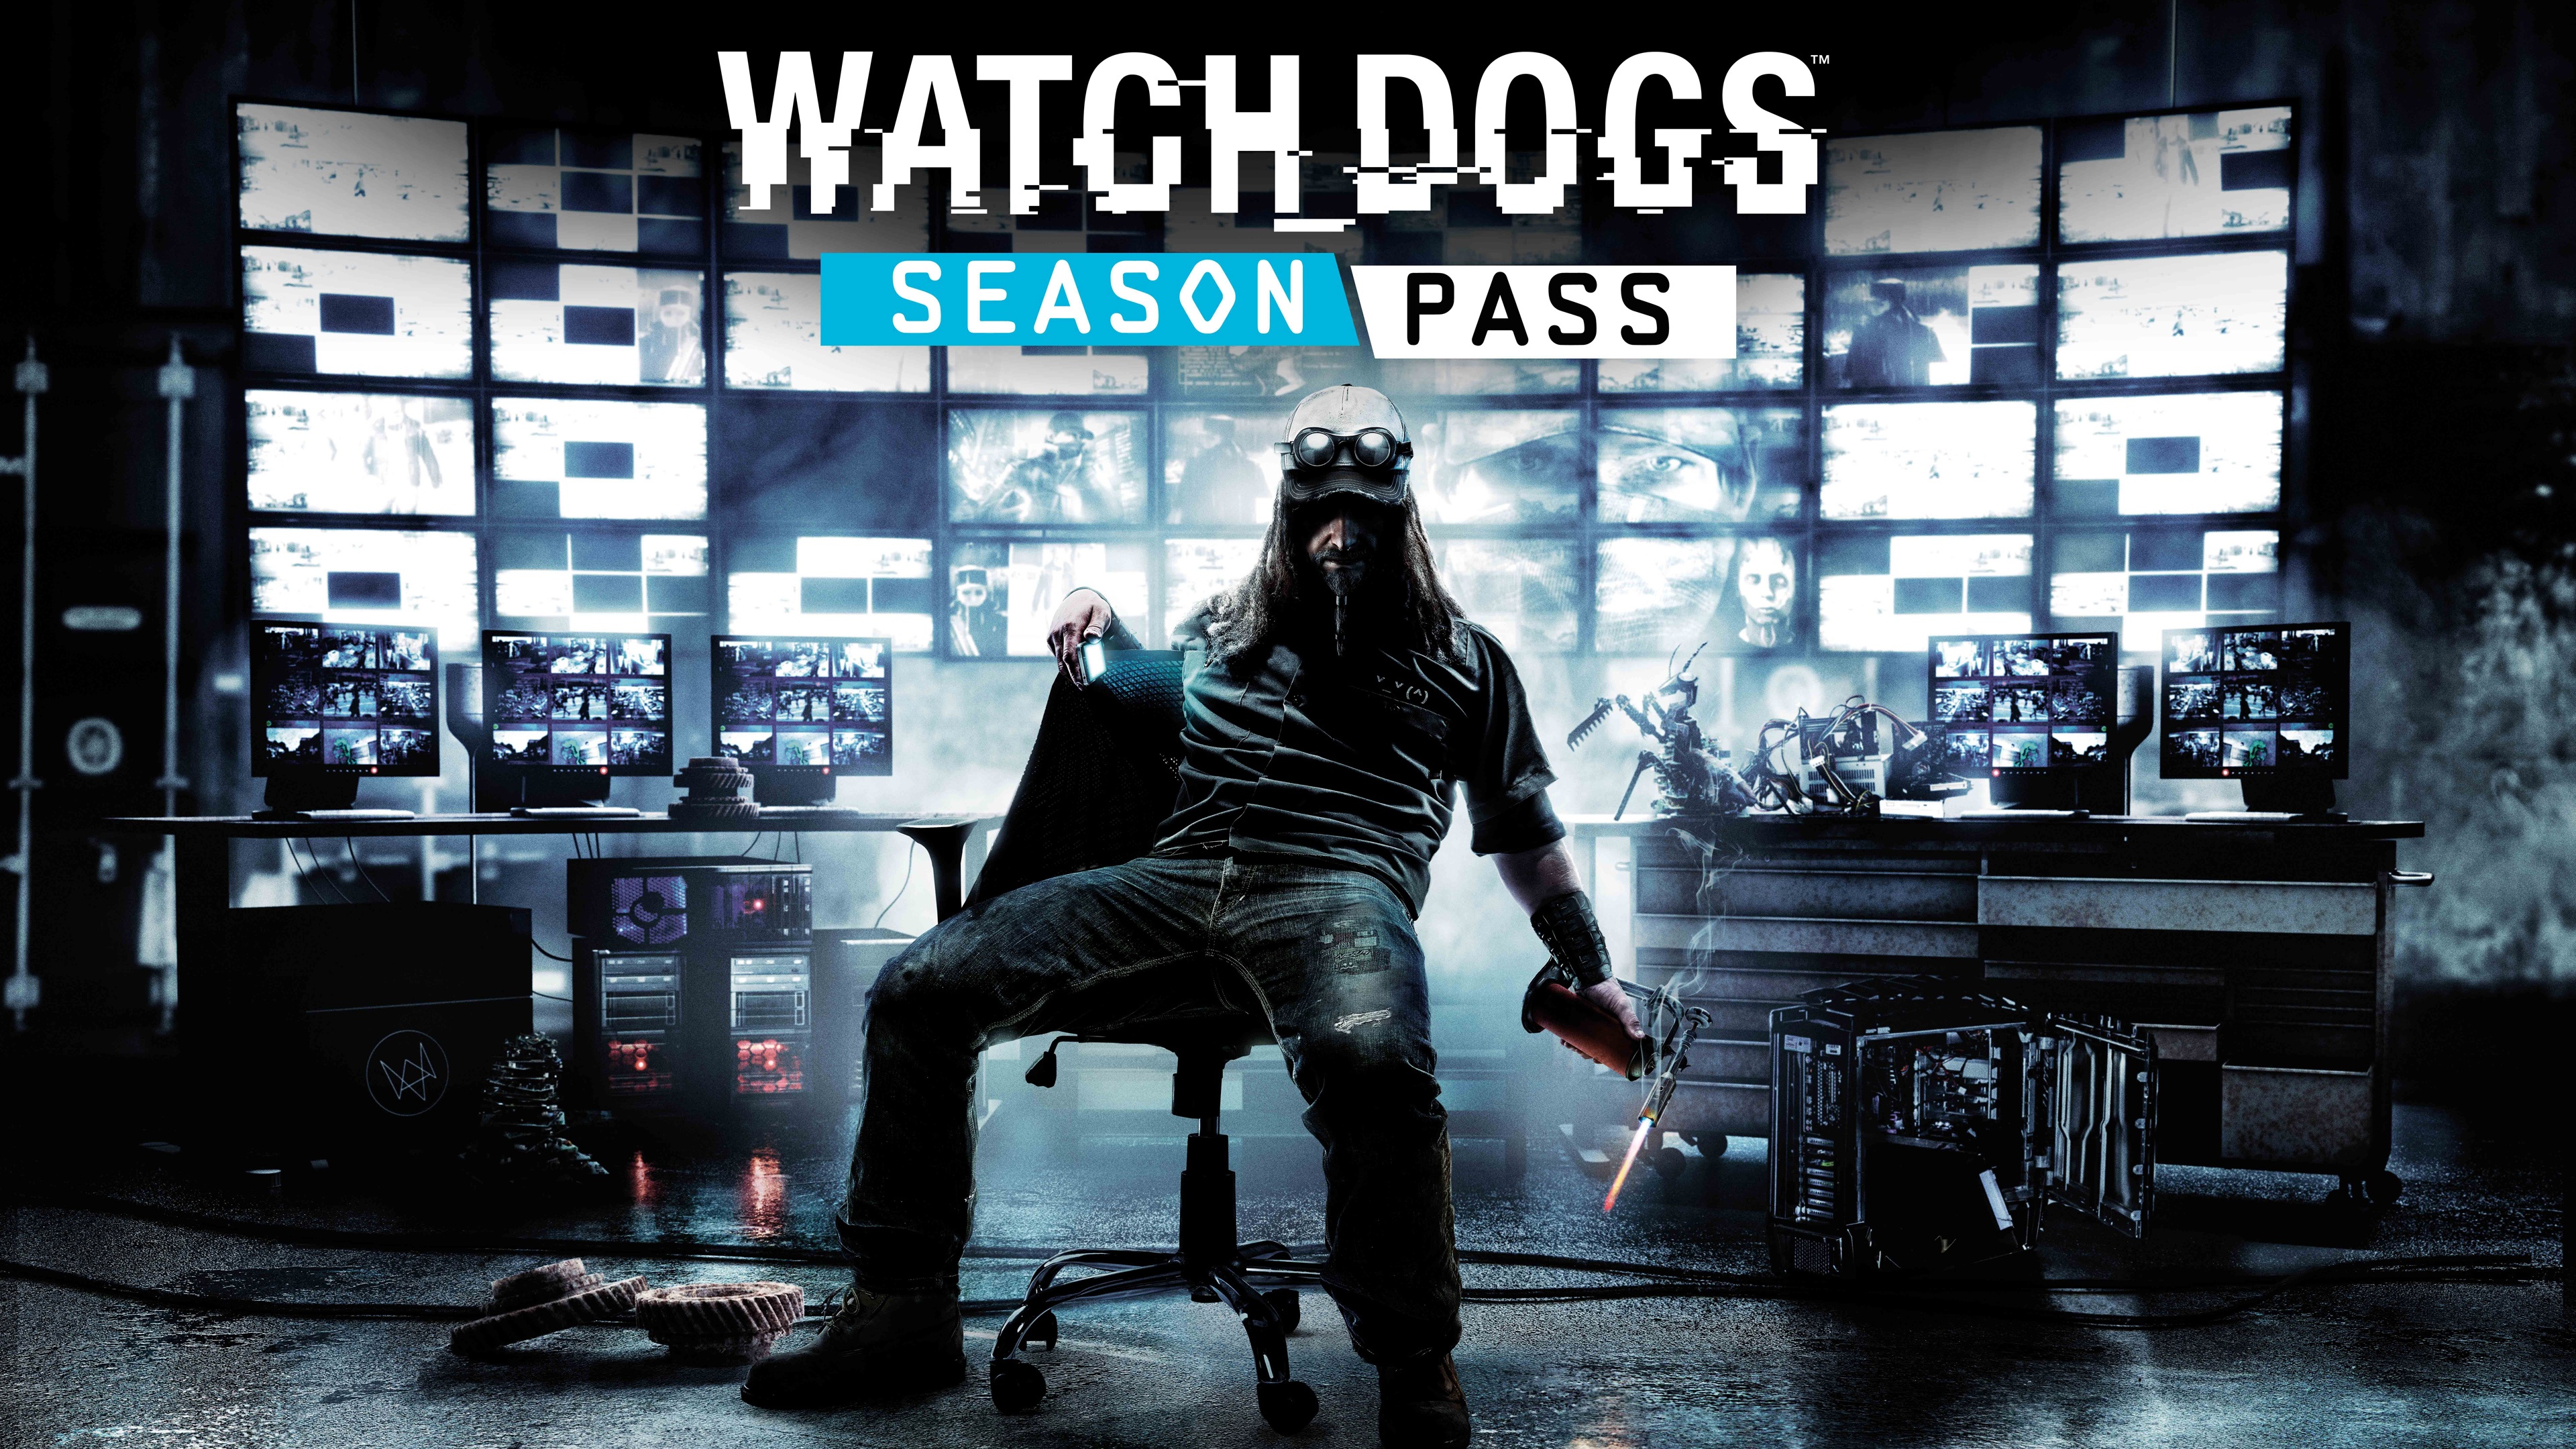 watch dogs season pass 3840 x 2160 84